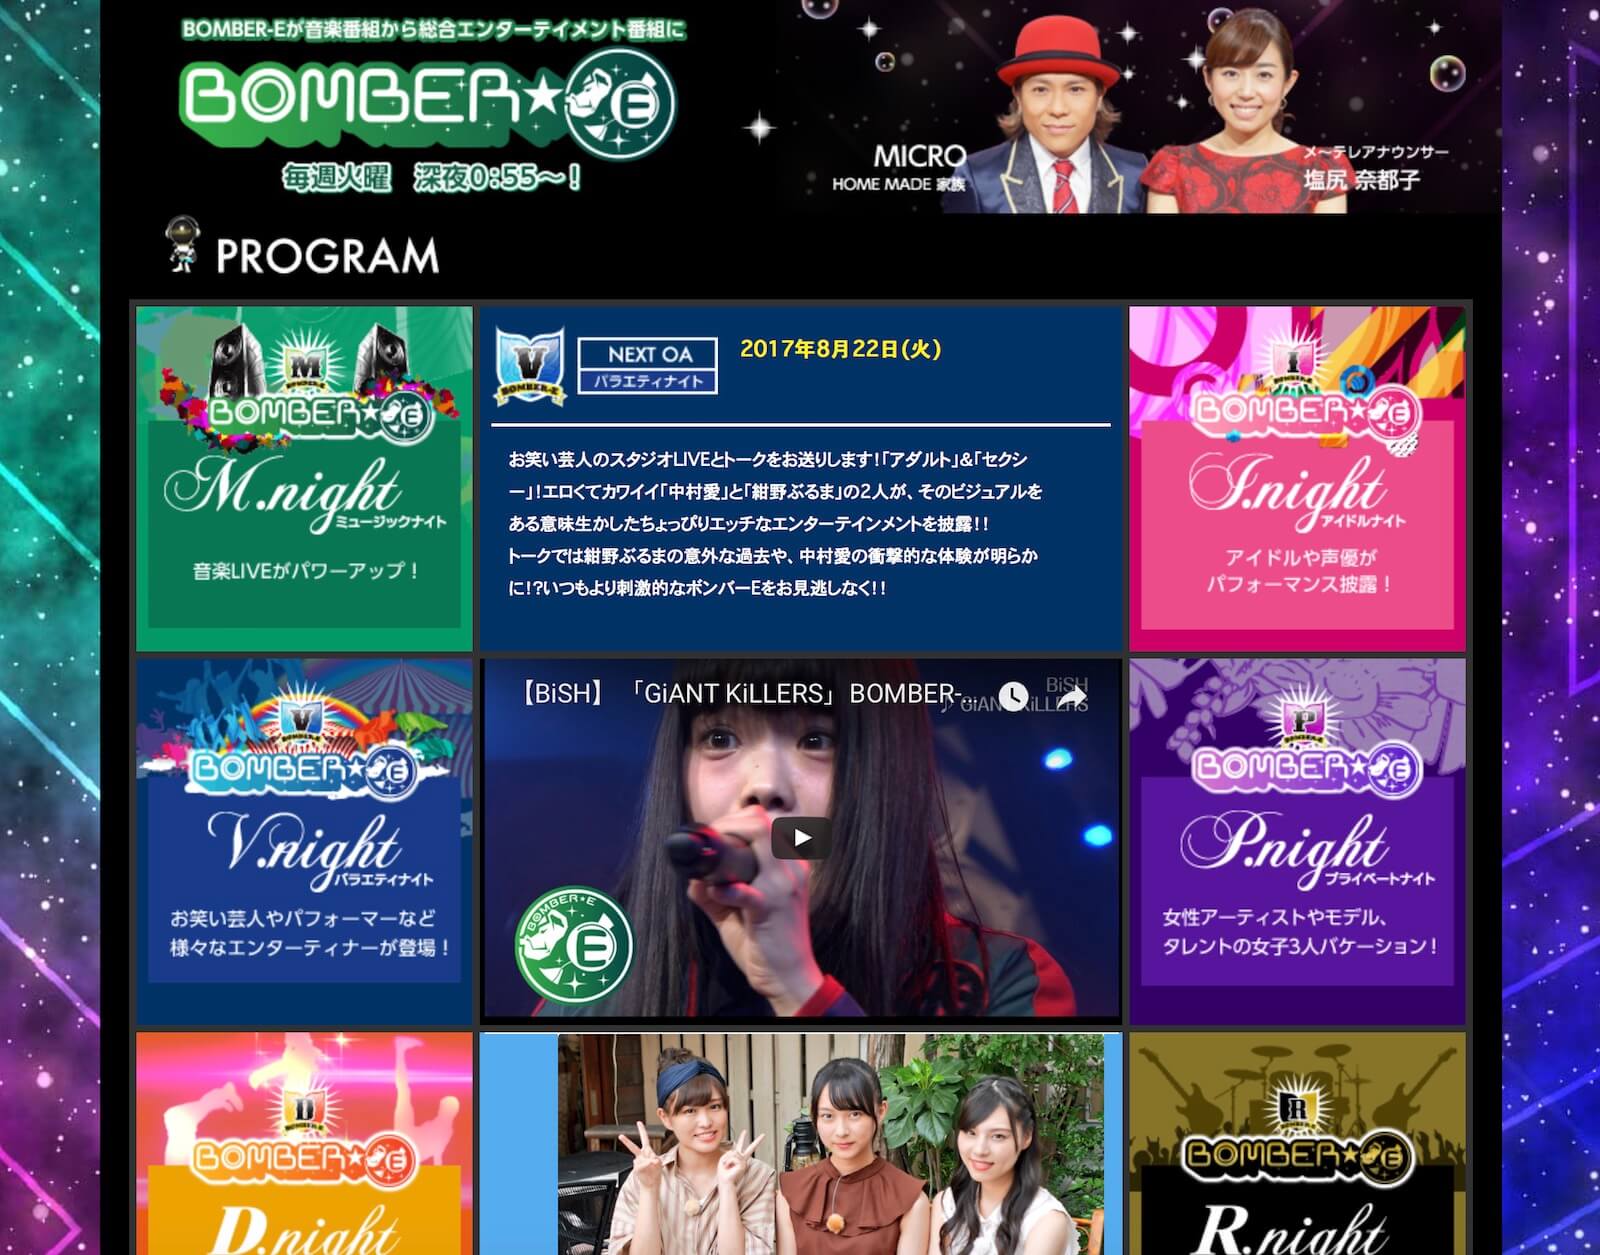 メ～テレ「BOMBER-E」公式サイト